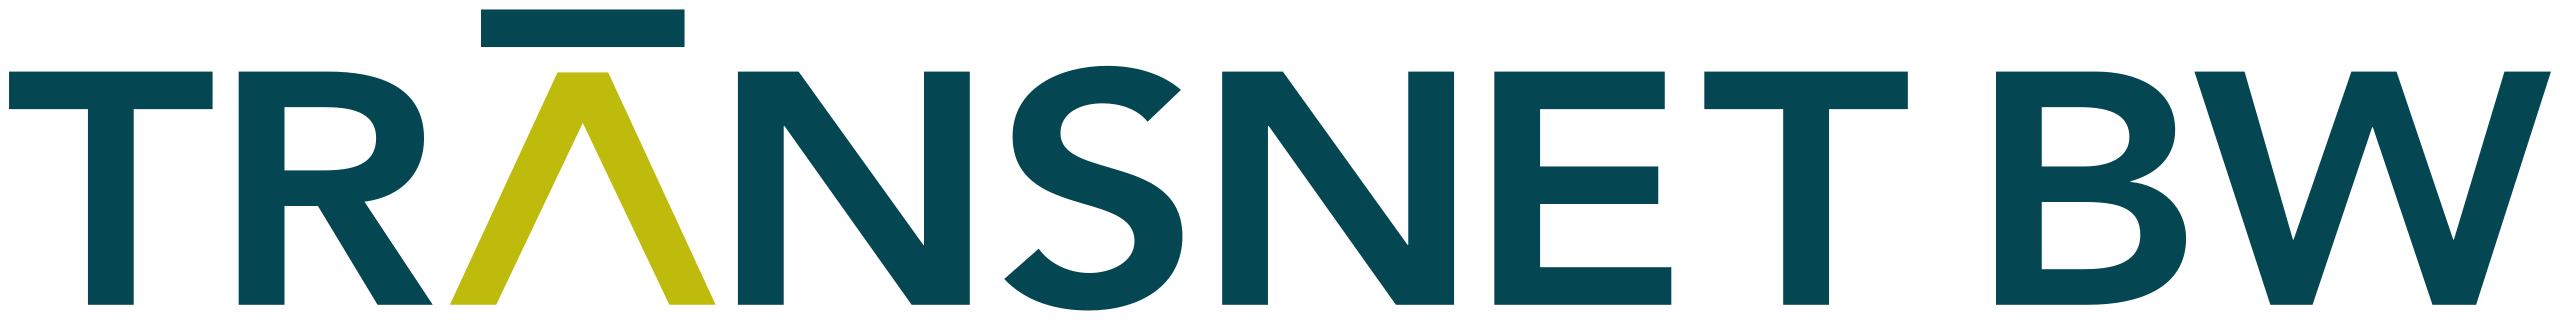 Logo TransnetBW GmbH